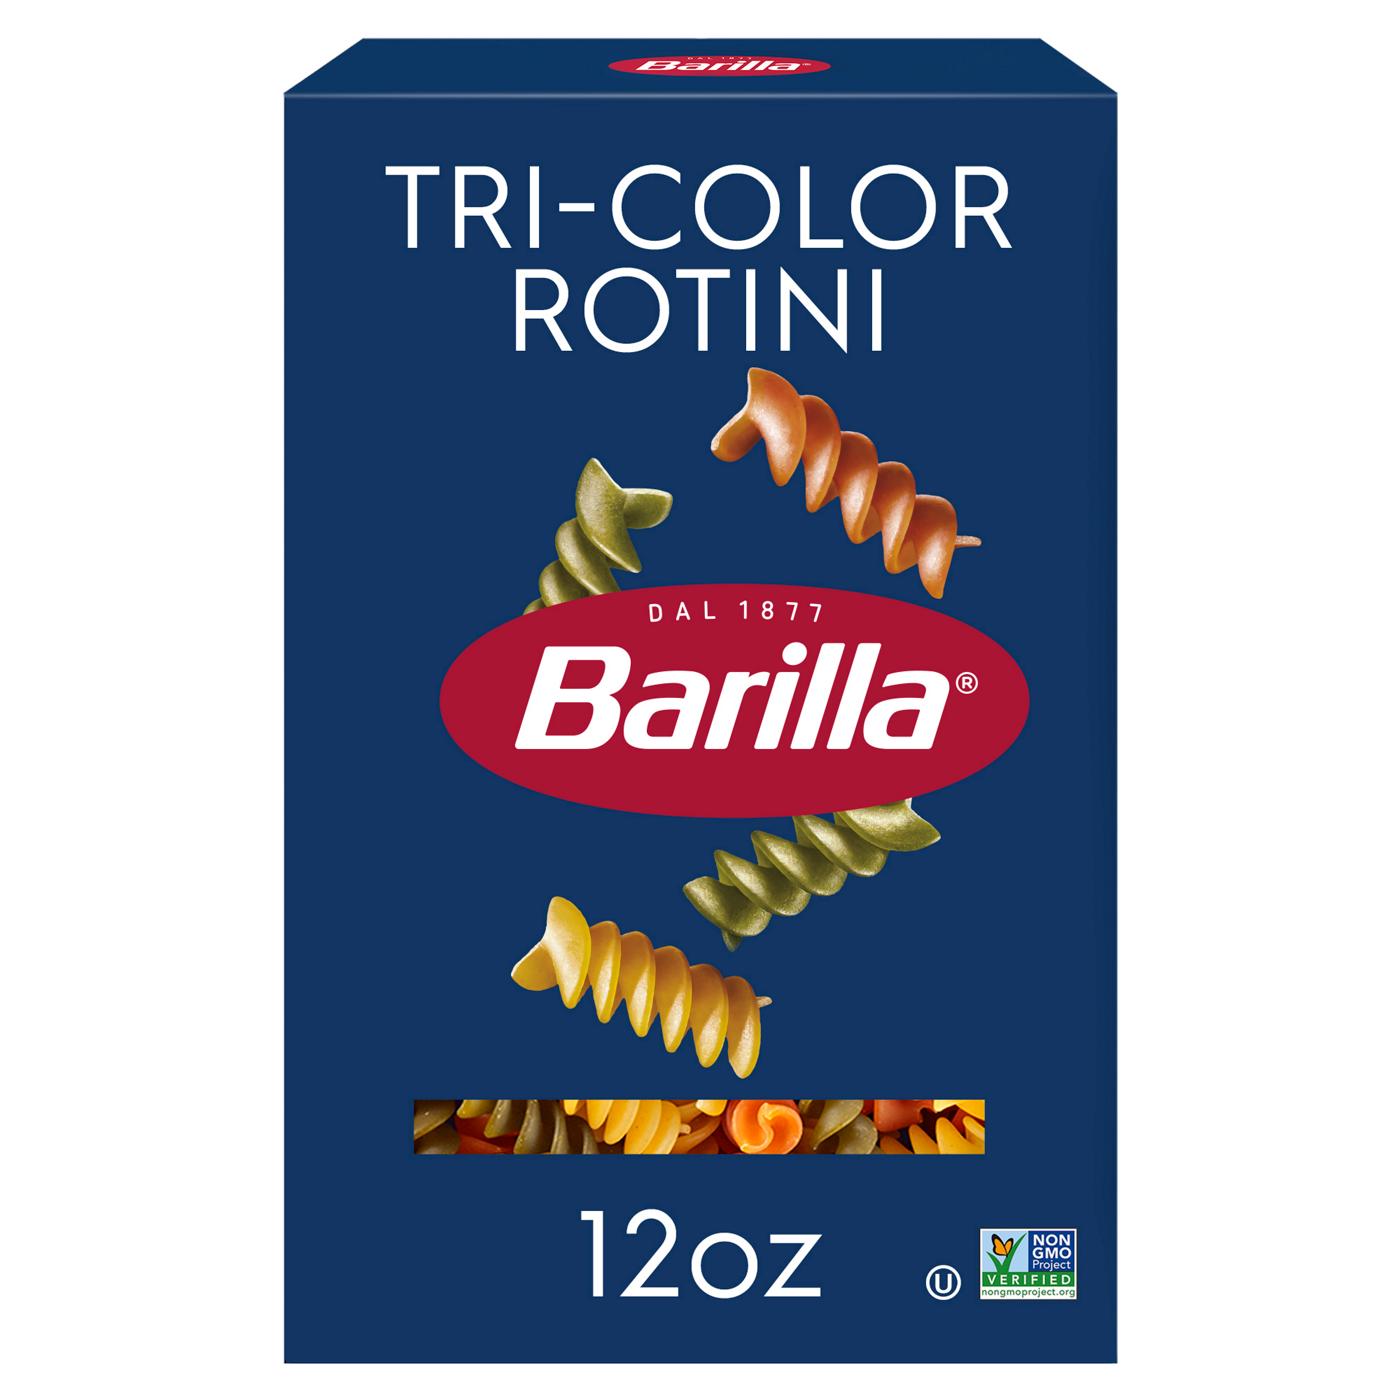 Barilla Tri-Color Rotini Pasta; image 1 of 6